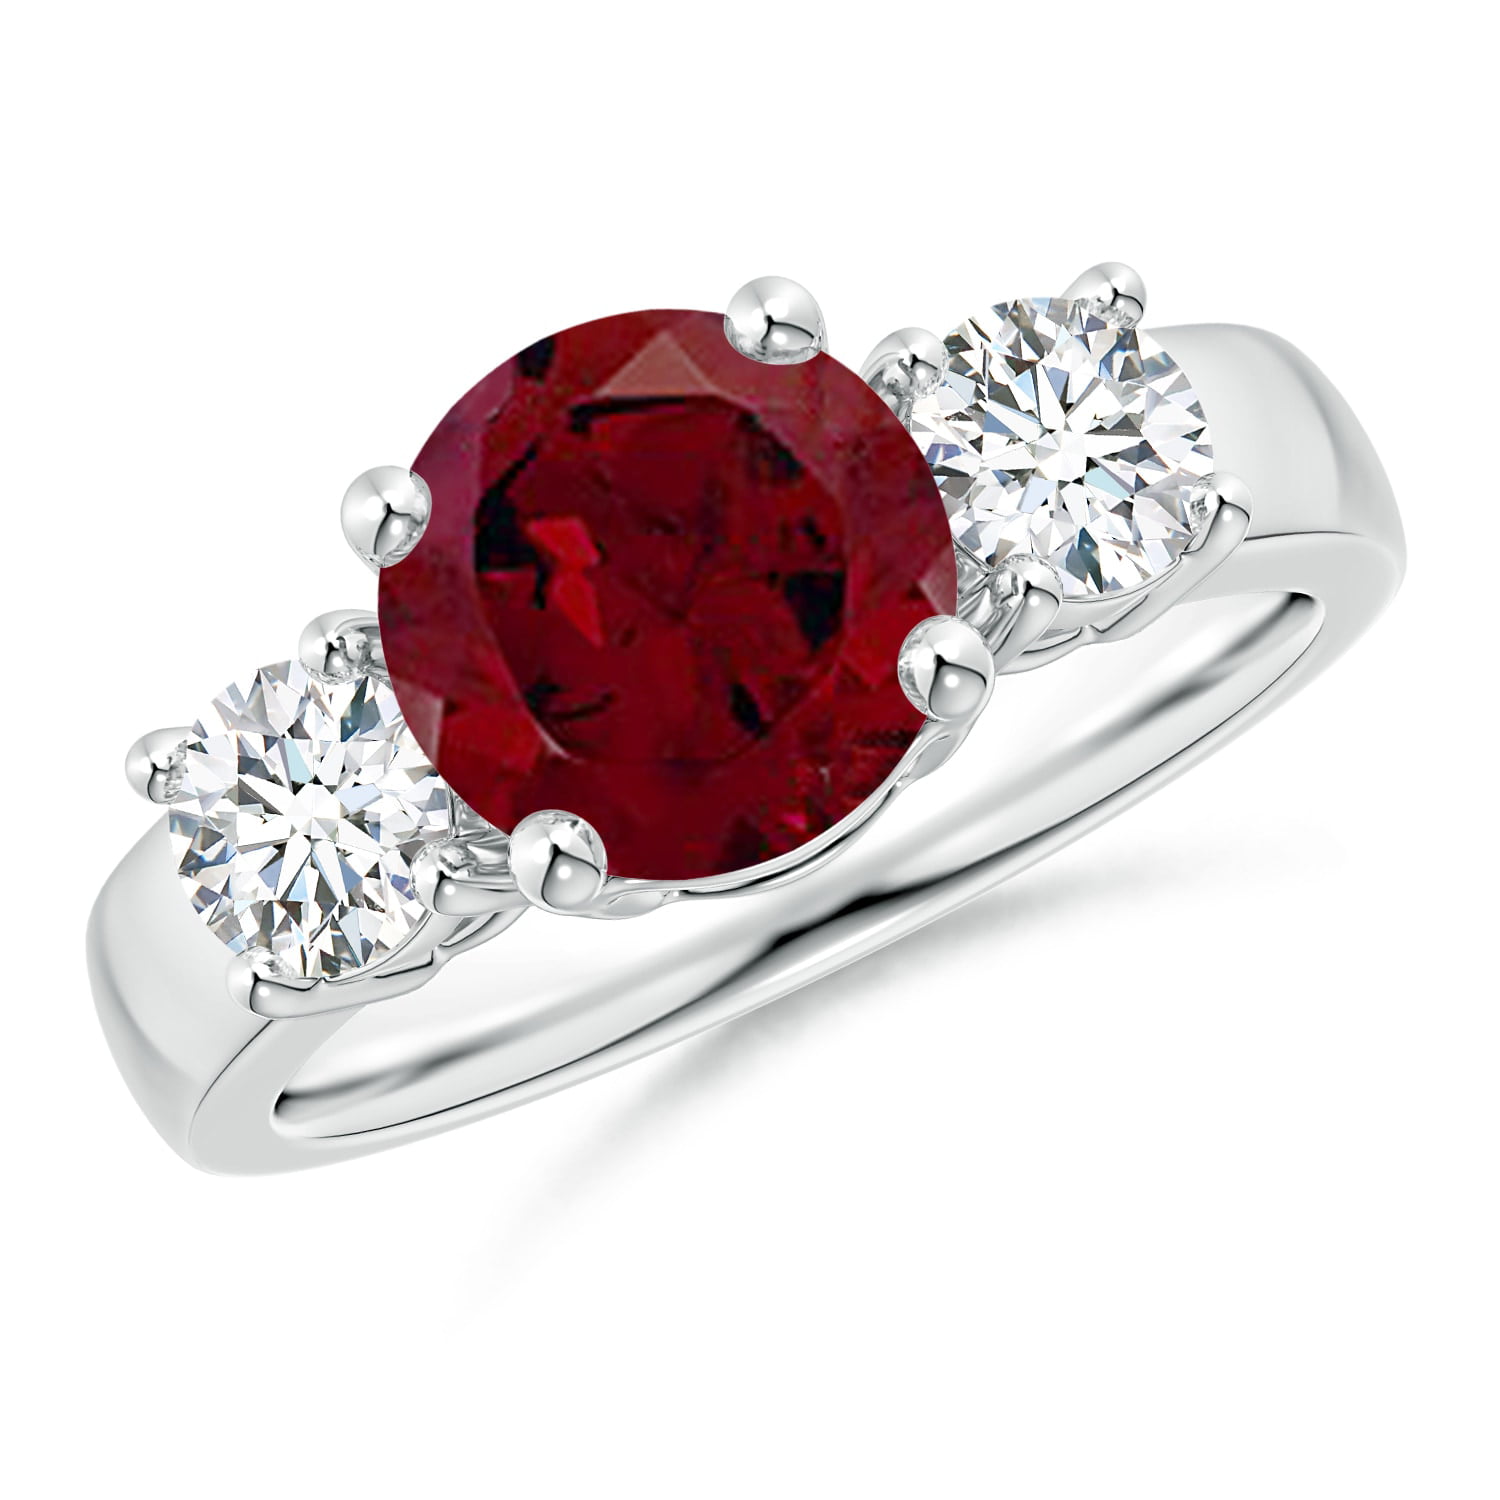 Angara - Valentine Jewelry Gift - Classic Garnet and Diamond Three ...